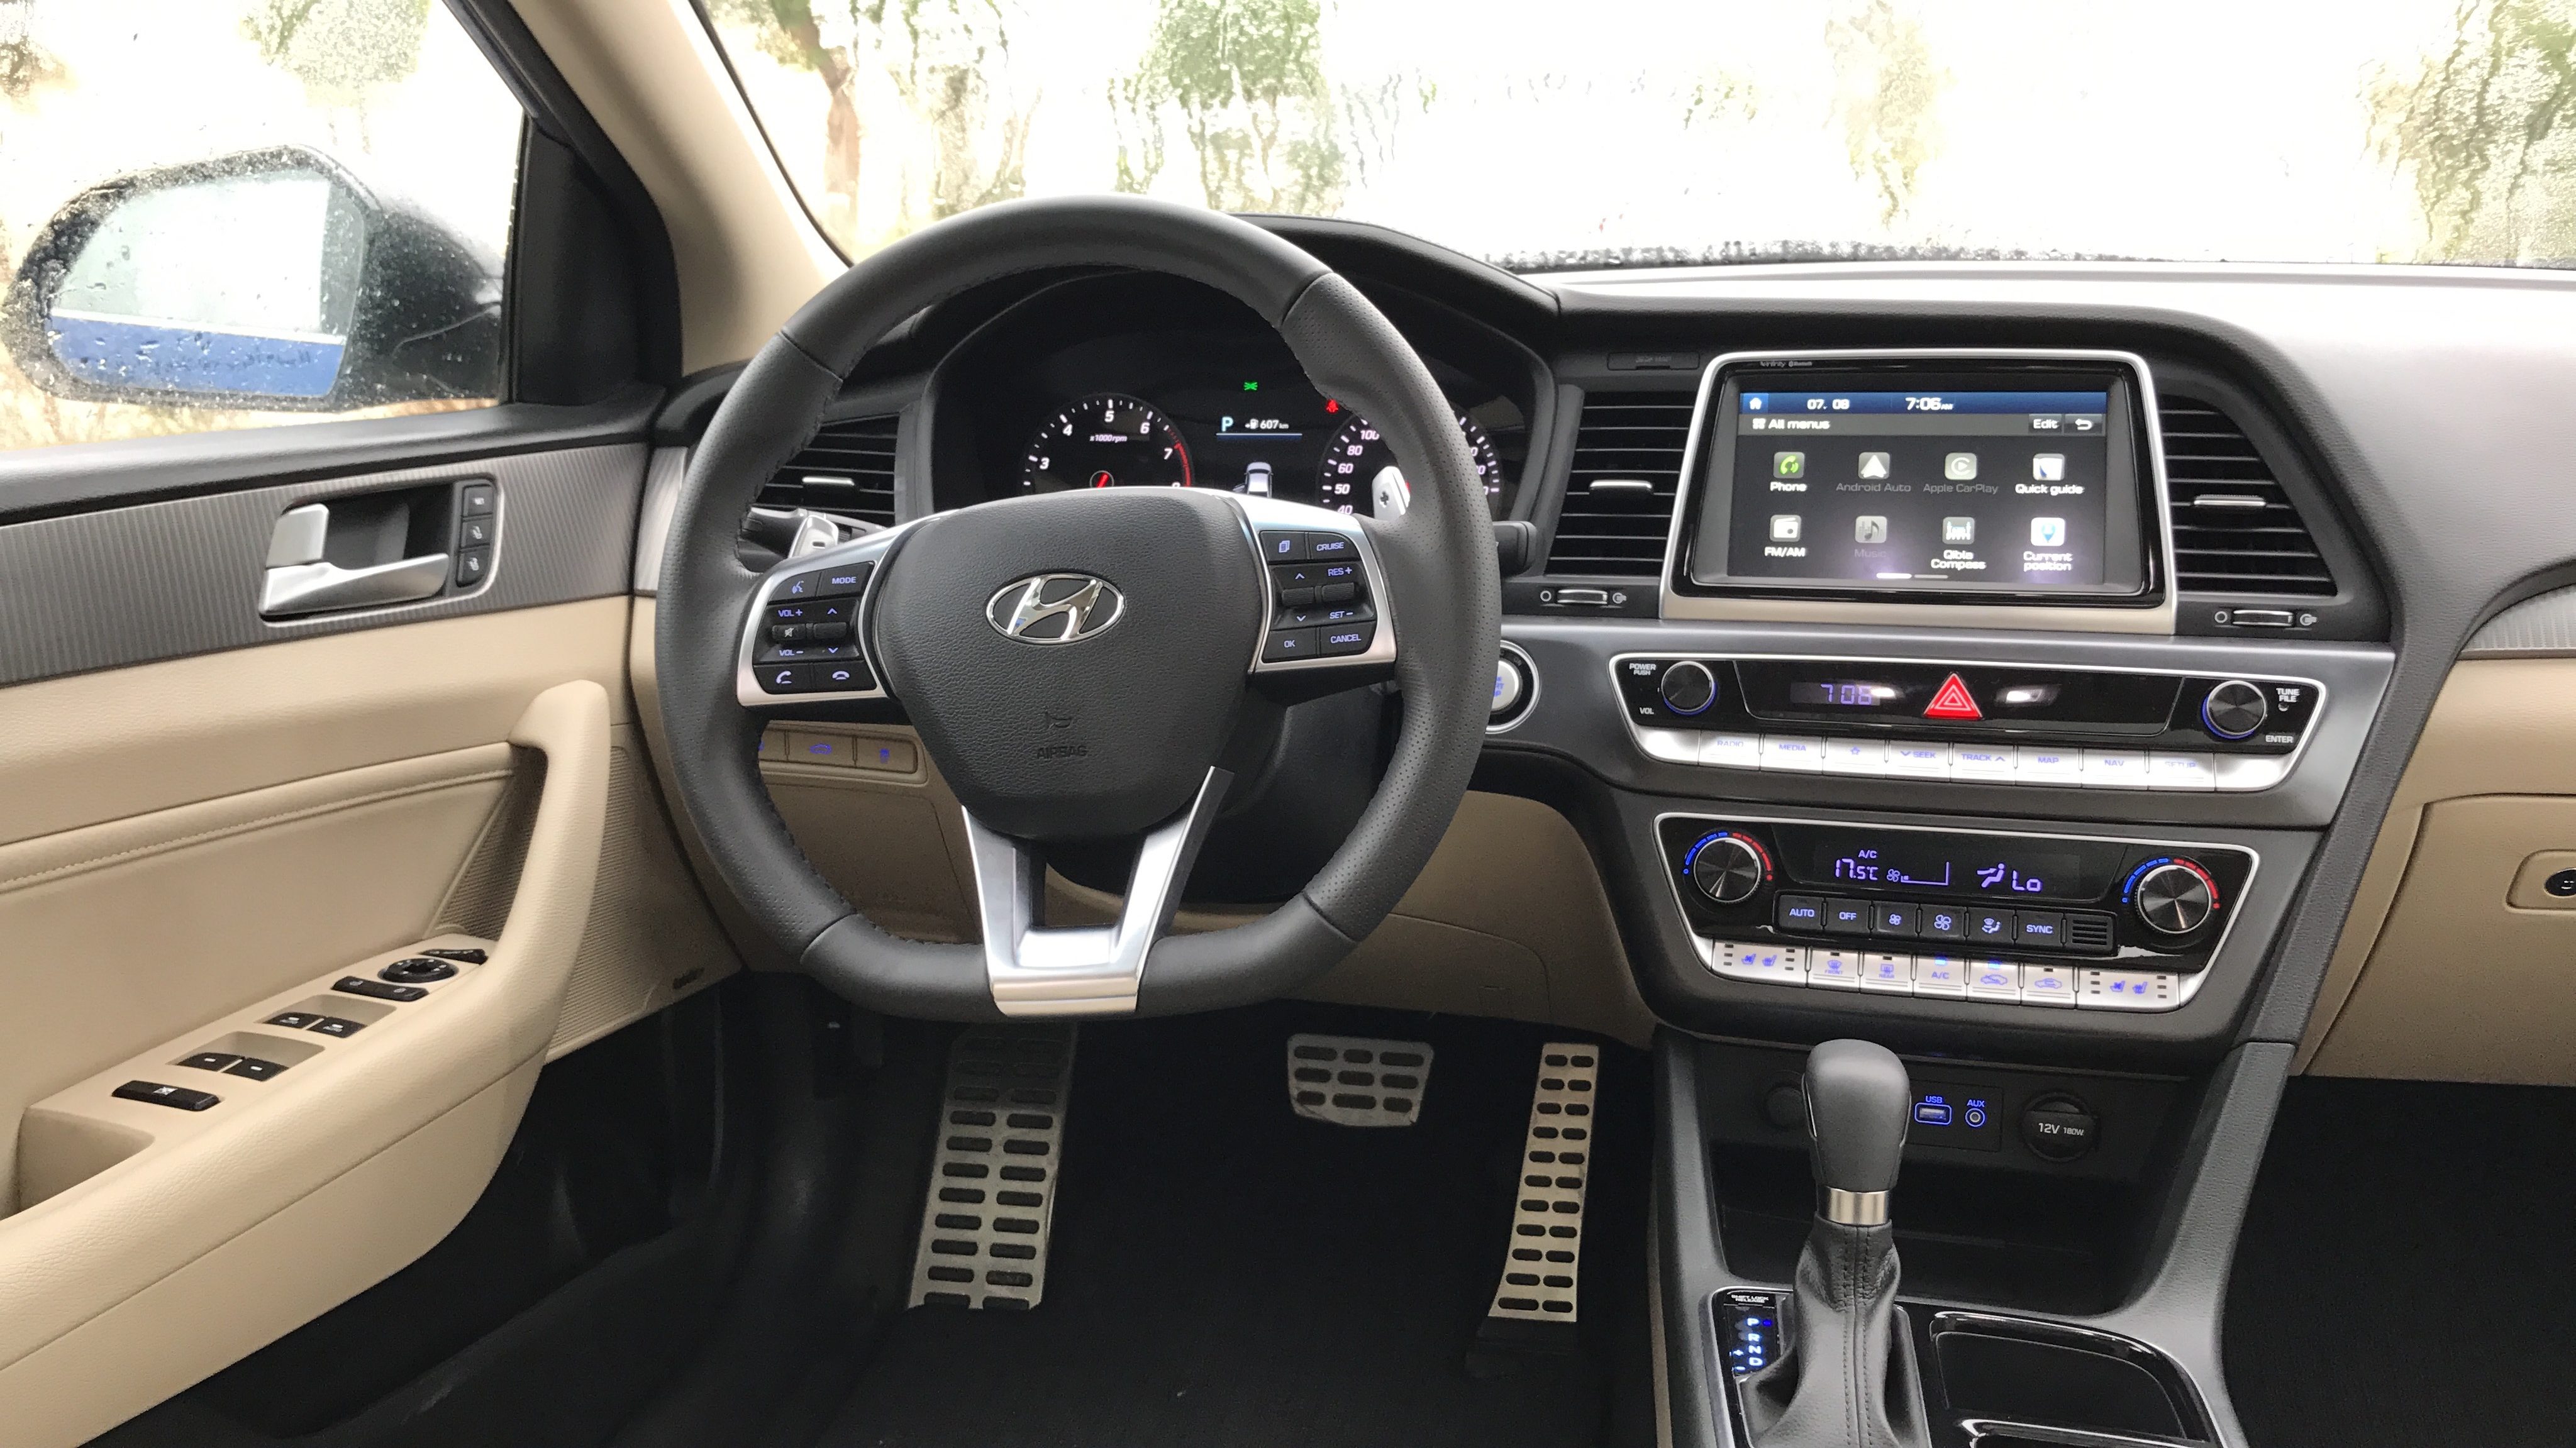 هيونداي سوناتا 2018 الشكل المحدث "صور ومواصفات واسعار وتقرير" Hyundai Sonata 15